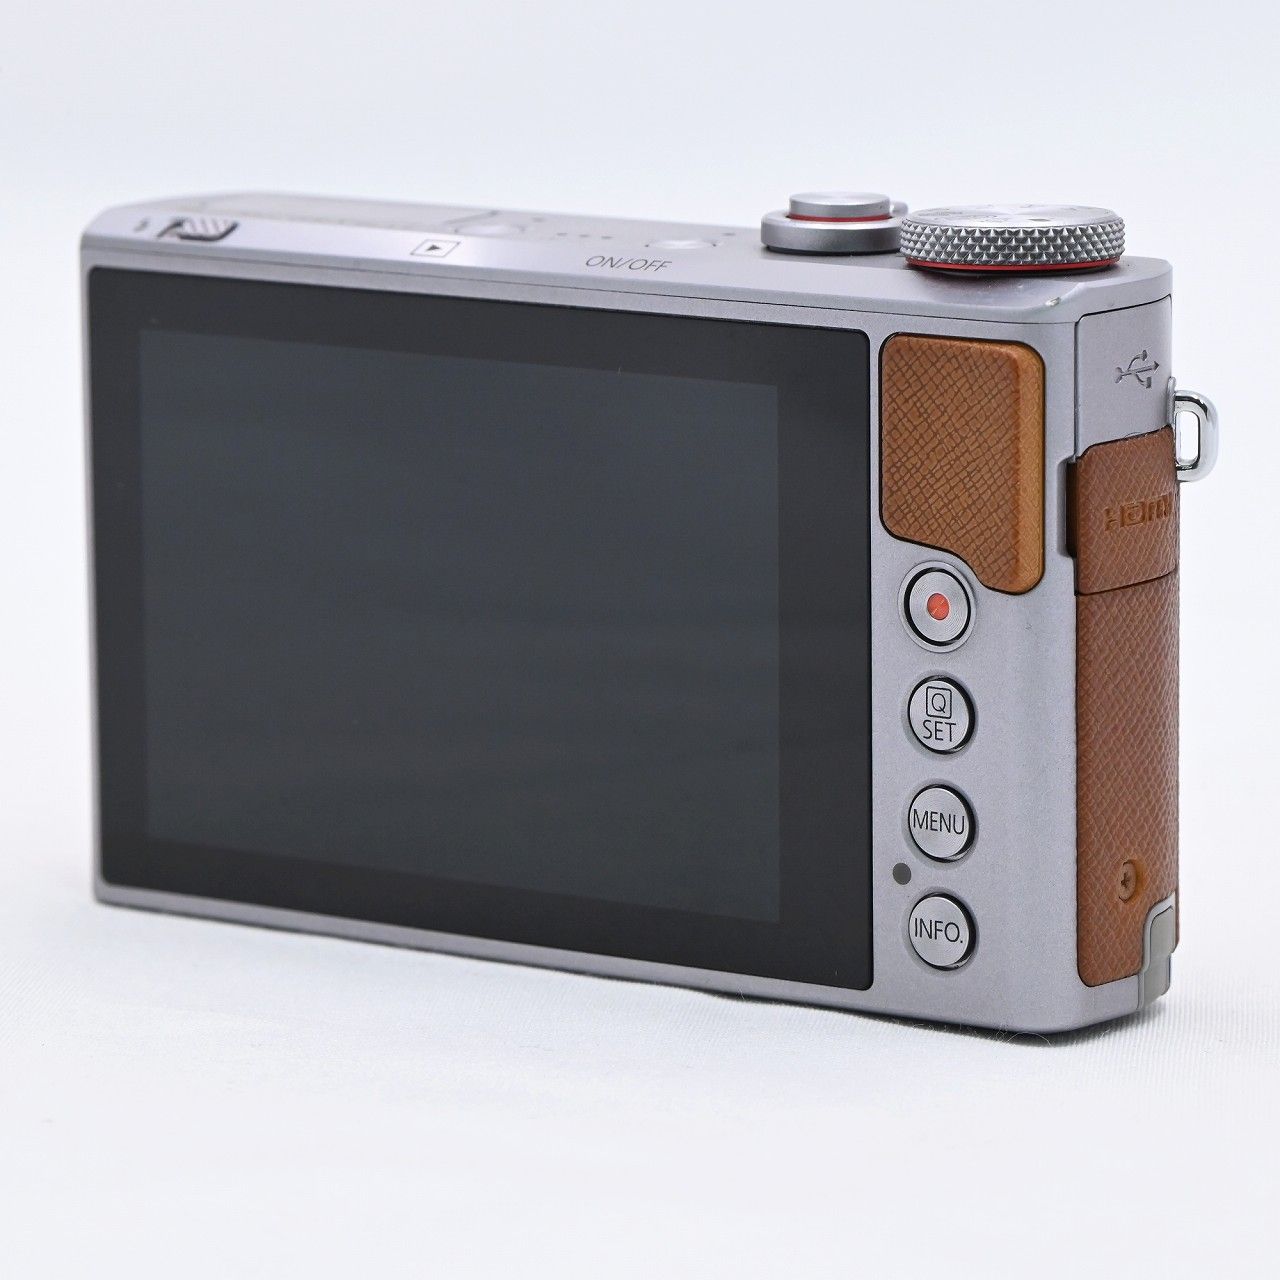 Canon コンパクトデジタルカメラ PowerShot G9 X Mark Ⅱ - カメラ